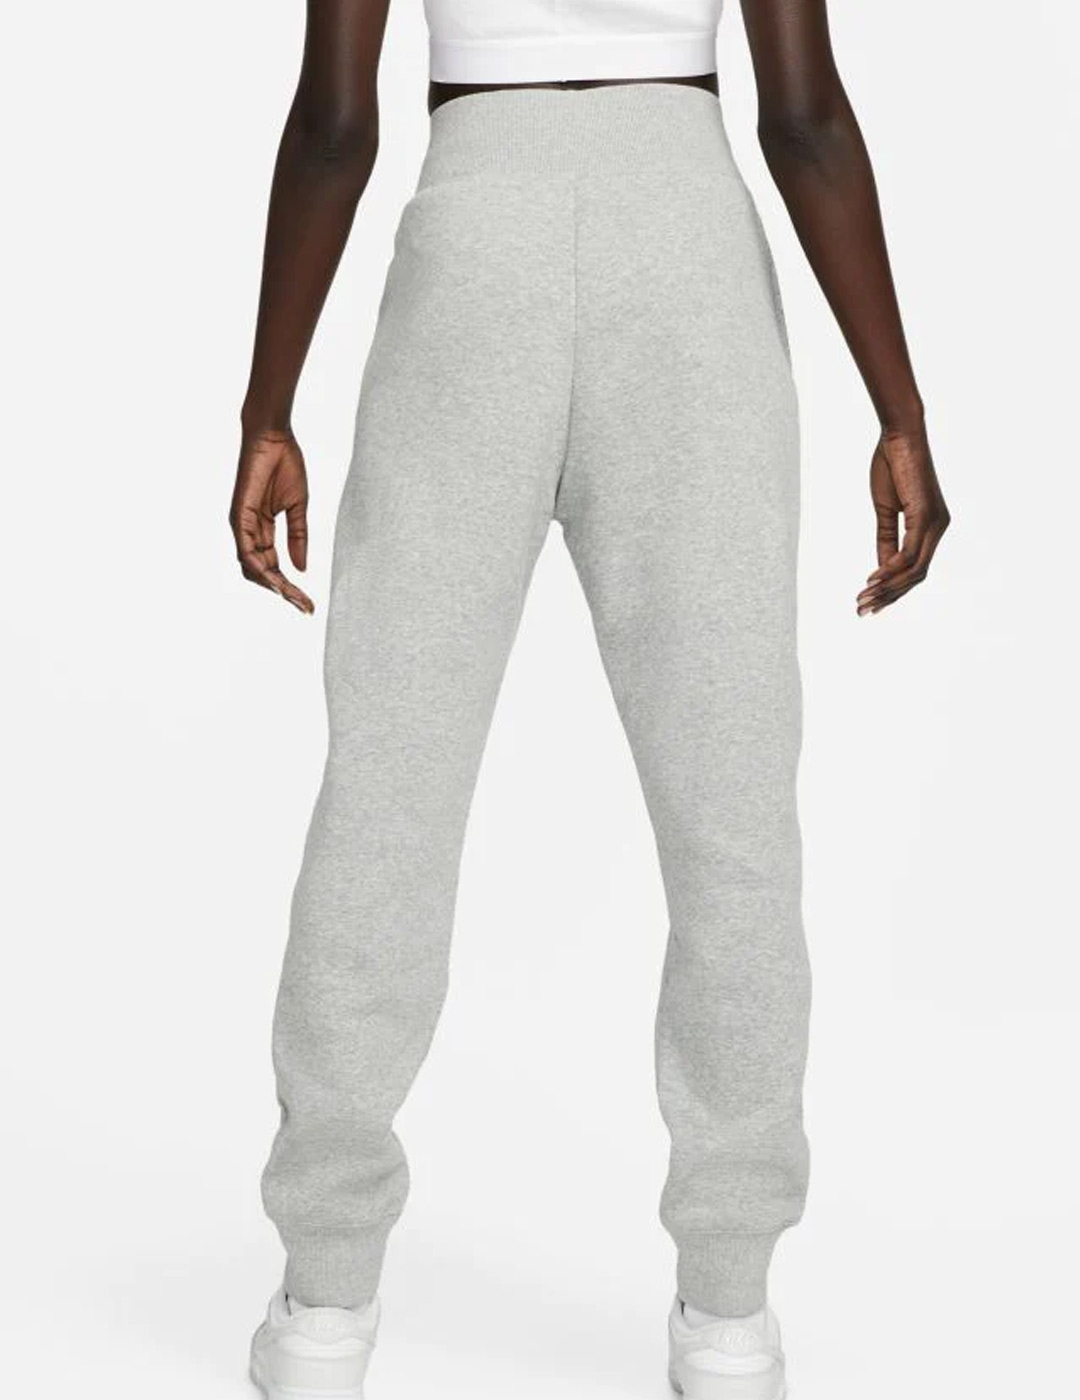 Pantalón Nike sportwear Phoenix mujer, gris